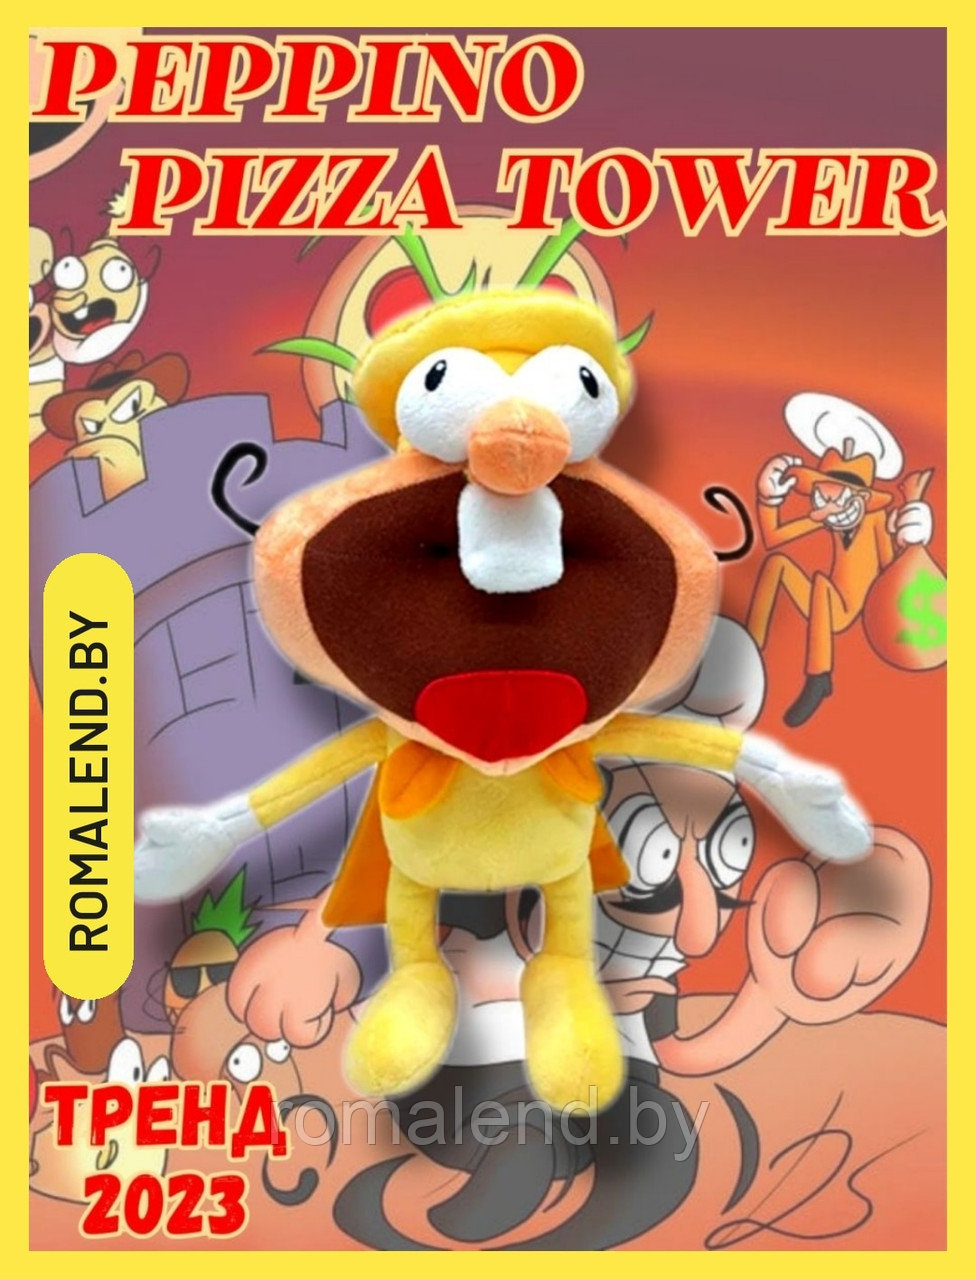 Мягкая игрушка Pizza Tower Пицца Товер оф банбан  32 см.